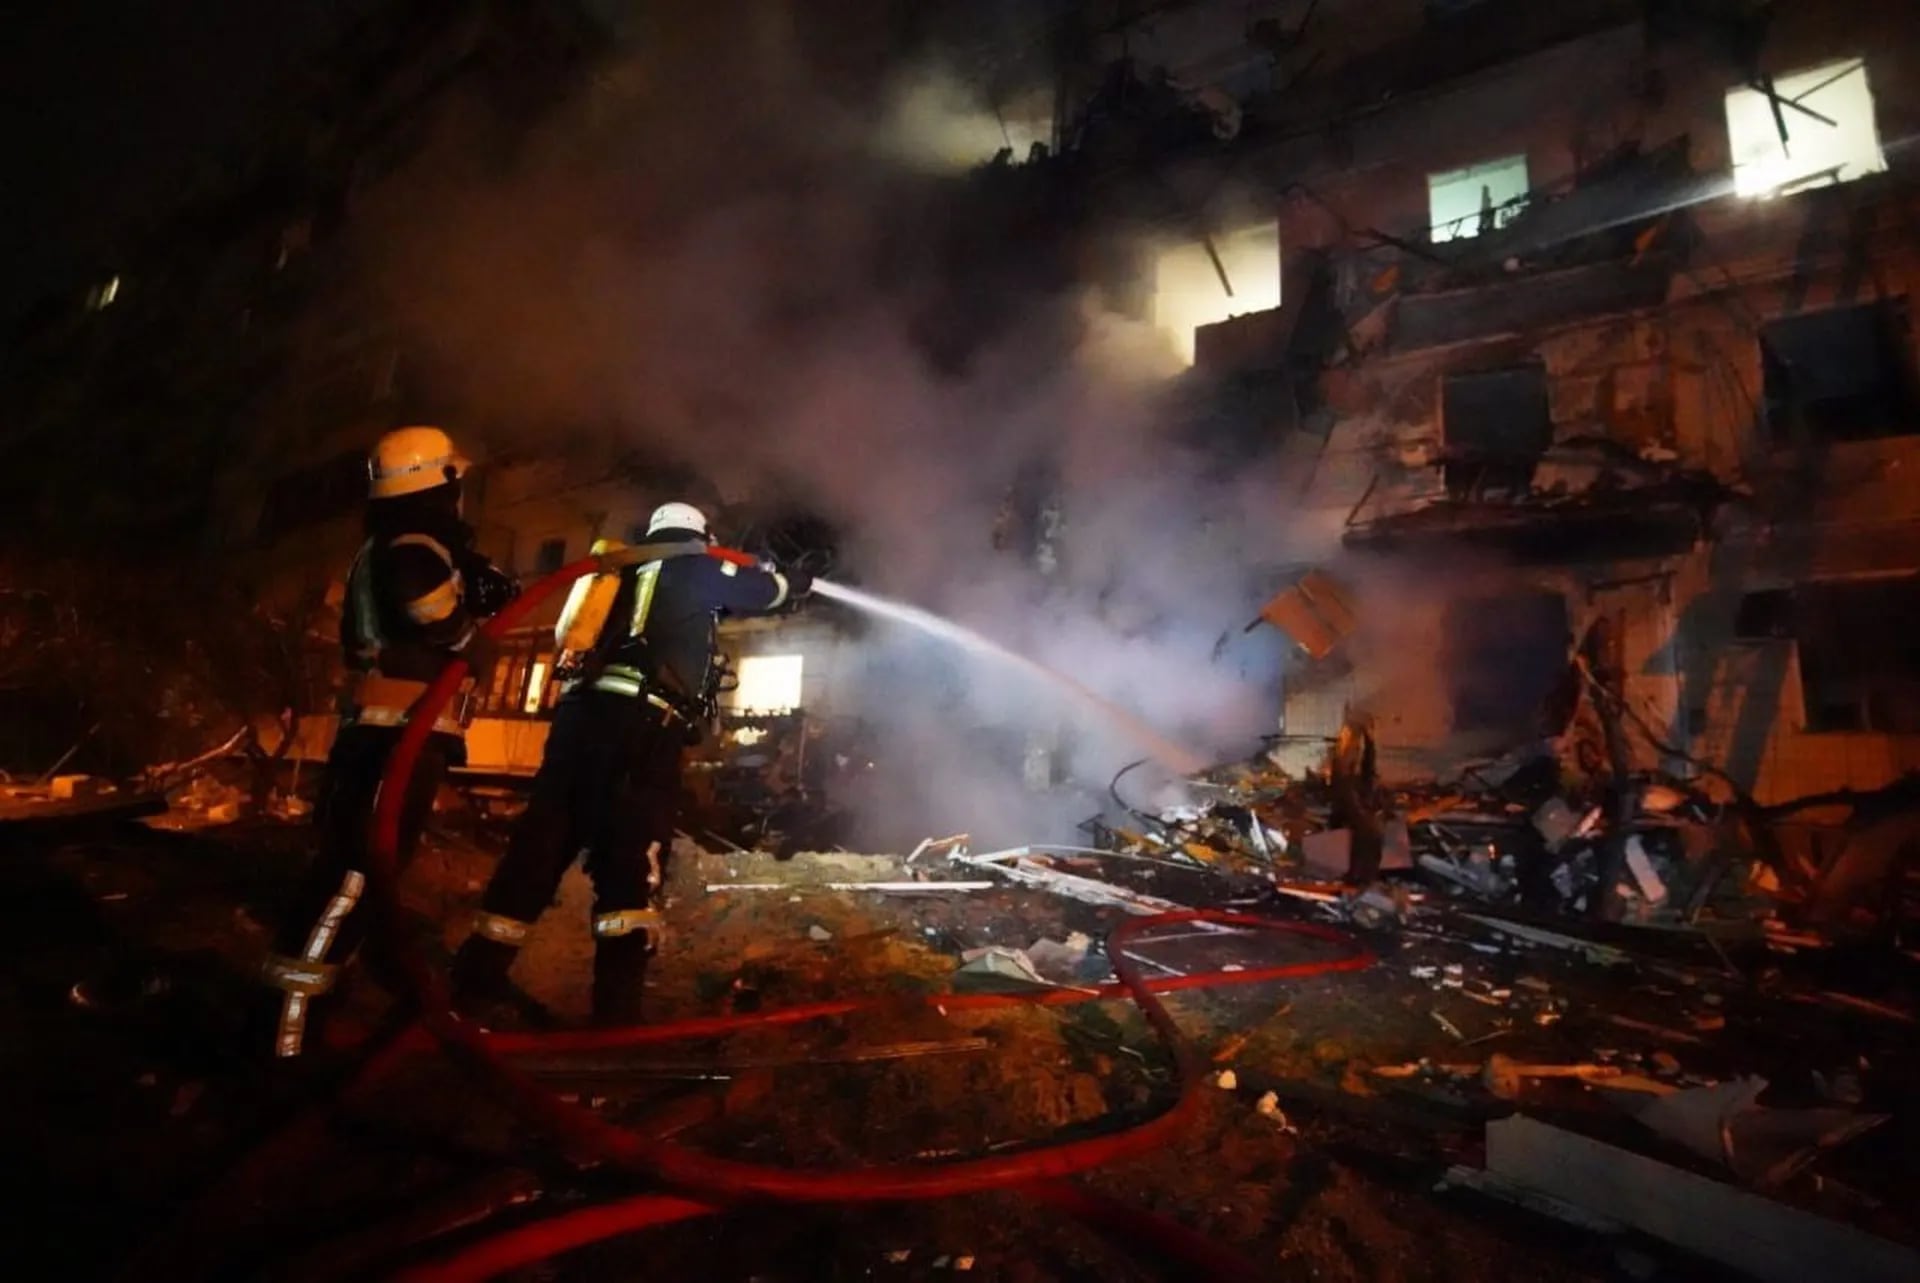 Los bomberos inten exitinguir an incendio in an edificio residentncial daoado in calle Koshytsa, a suburbio in the capital of Ukraine, Kiev, la madrugada del viernes.